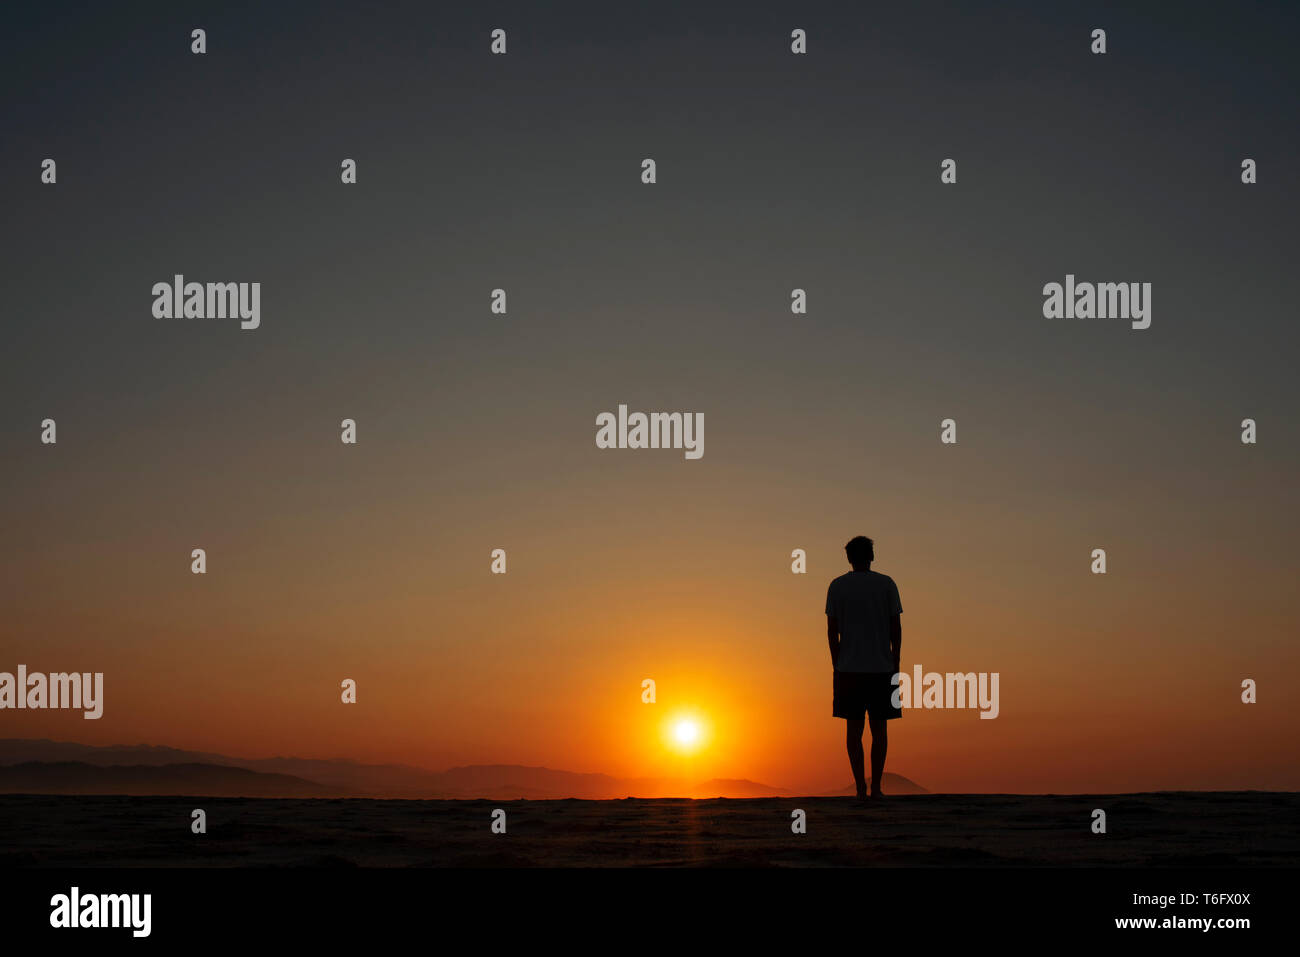 Silhouette d'homme qui regarde le beau soleil orange allumé sur l'horizon. Coastal lever/coucher du concept. Chacahua, Oaxaca, Mexique. Apr 2019 Banque D'Images